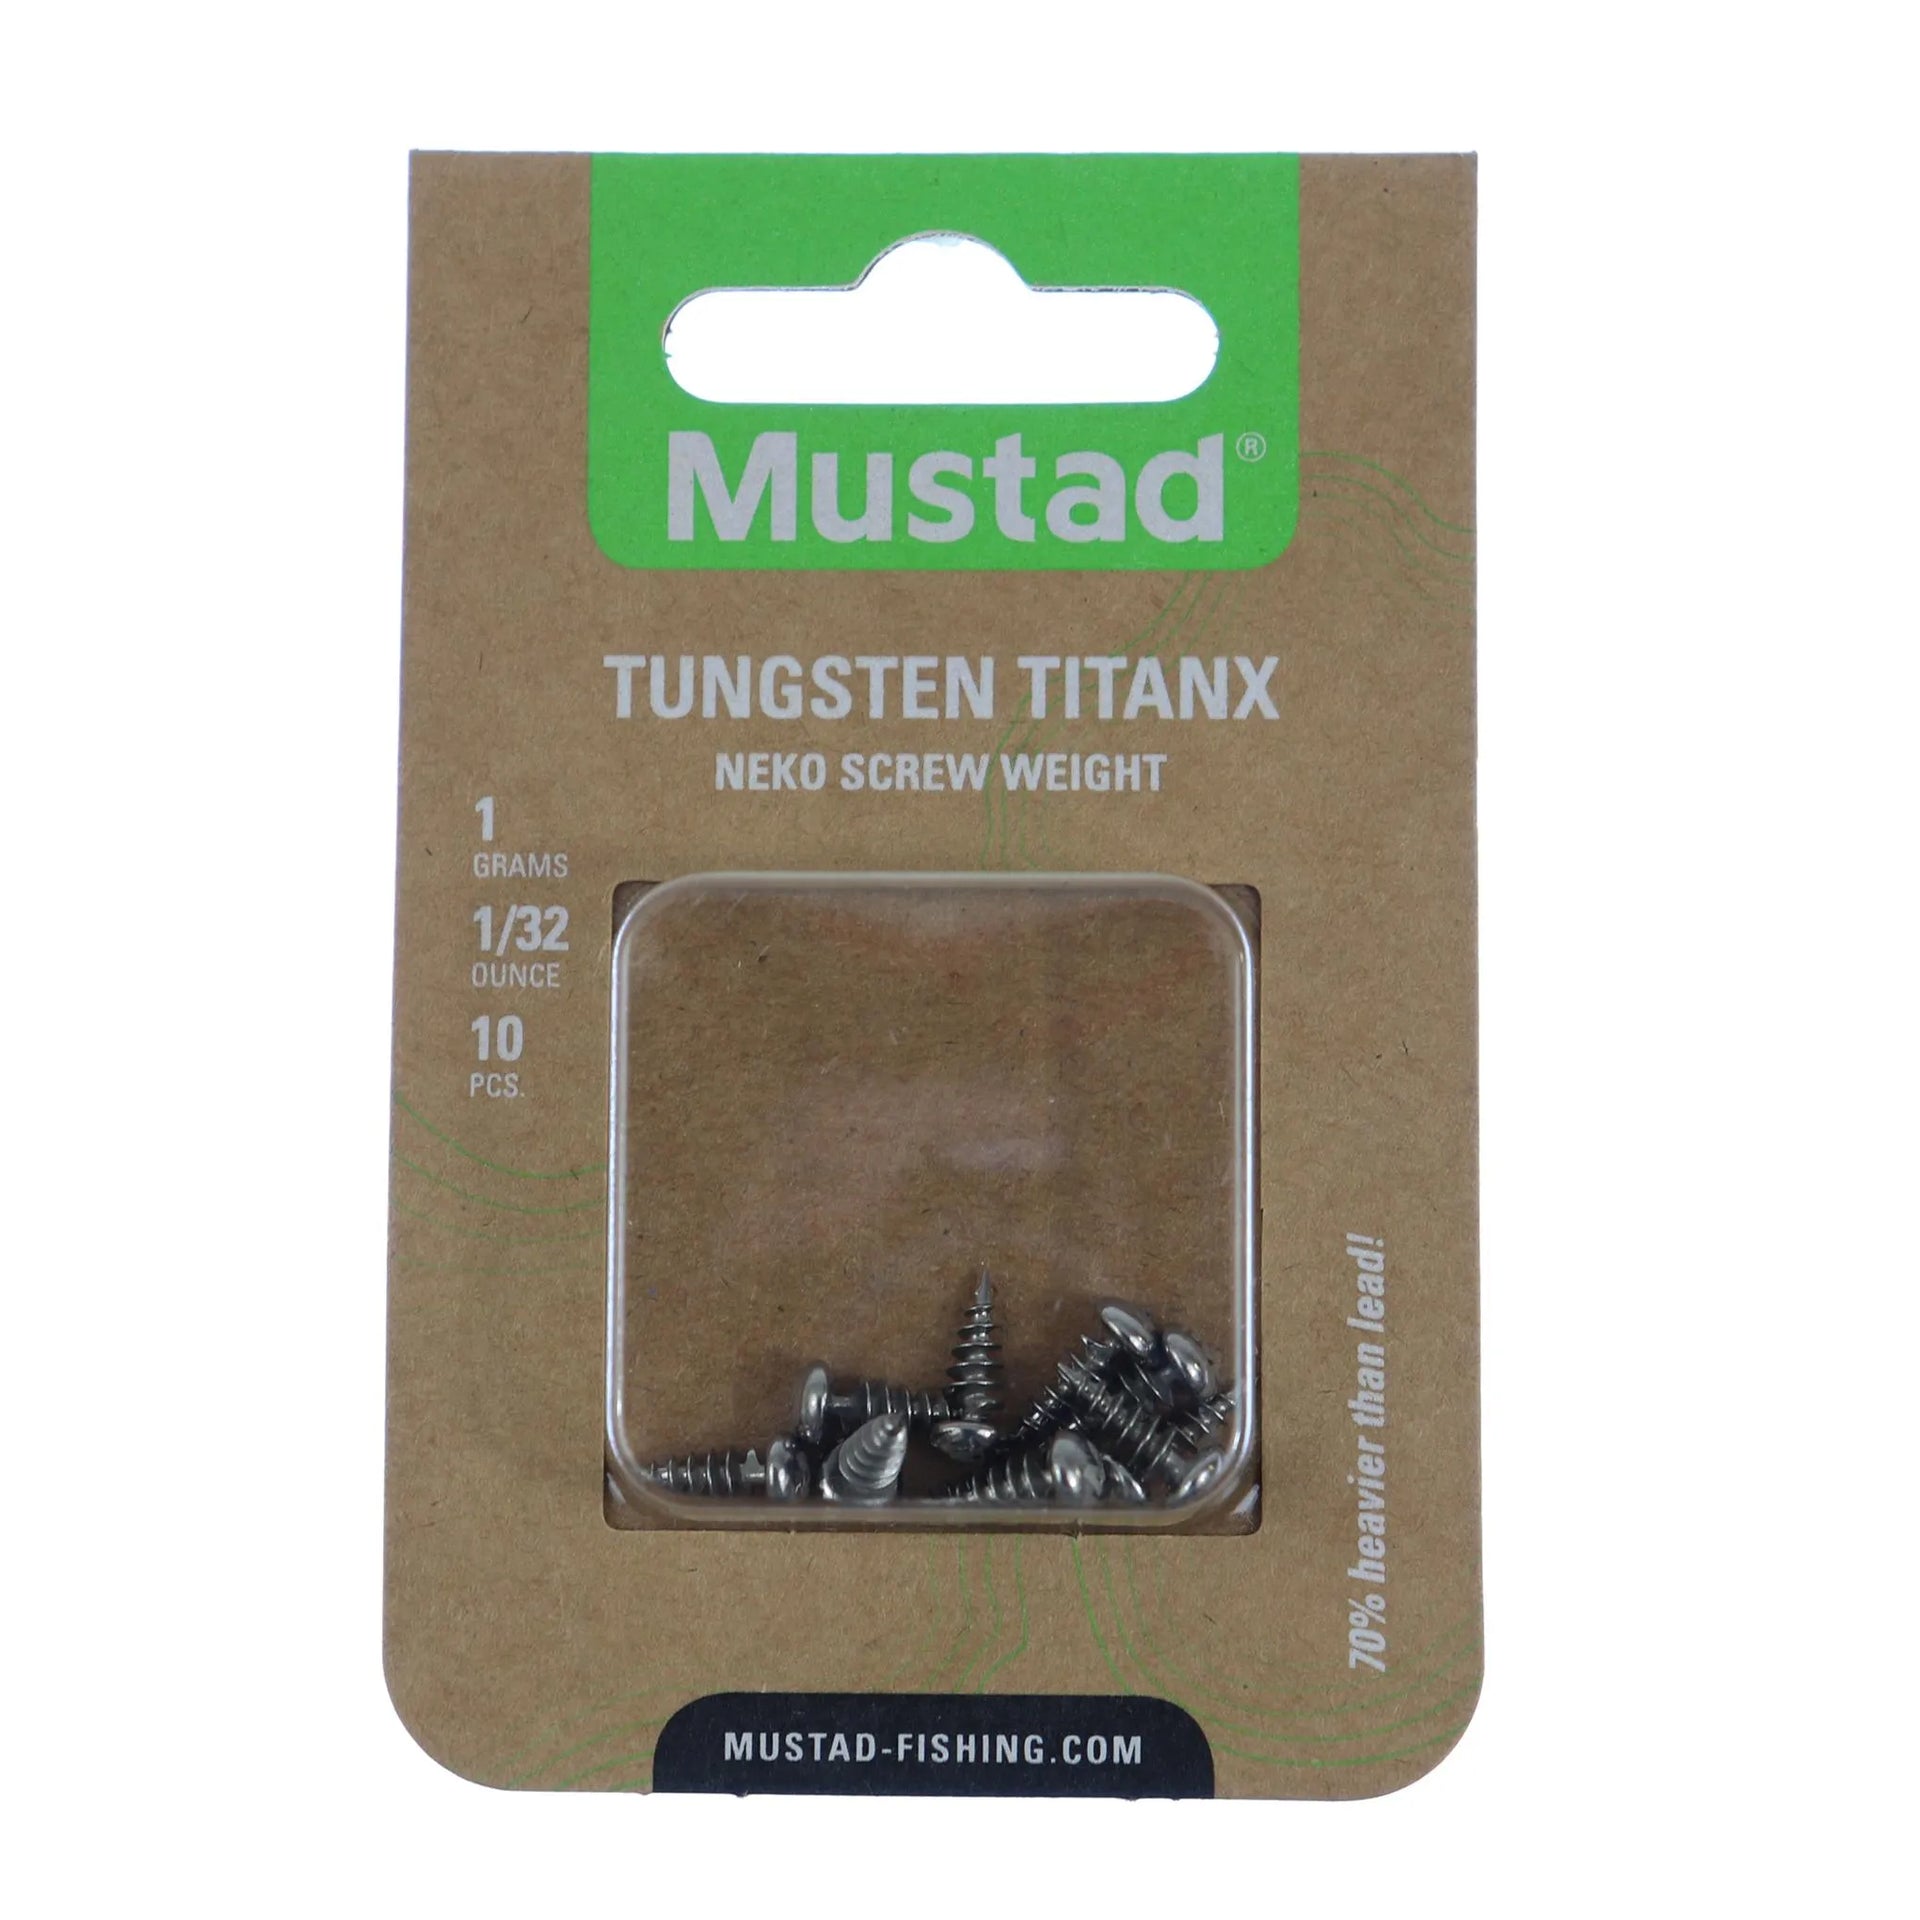  Mustad TitanX Neko Kit ASST : Sports & Outdoors